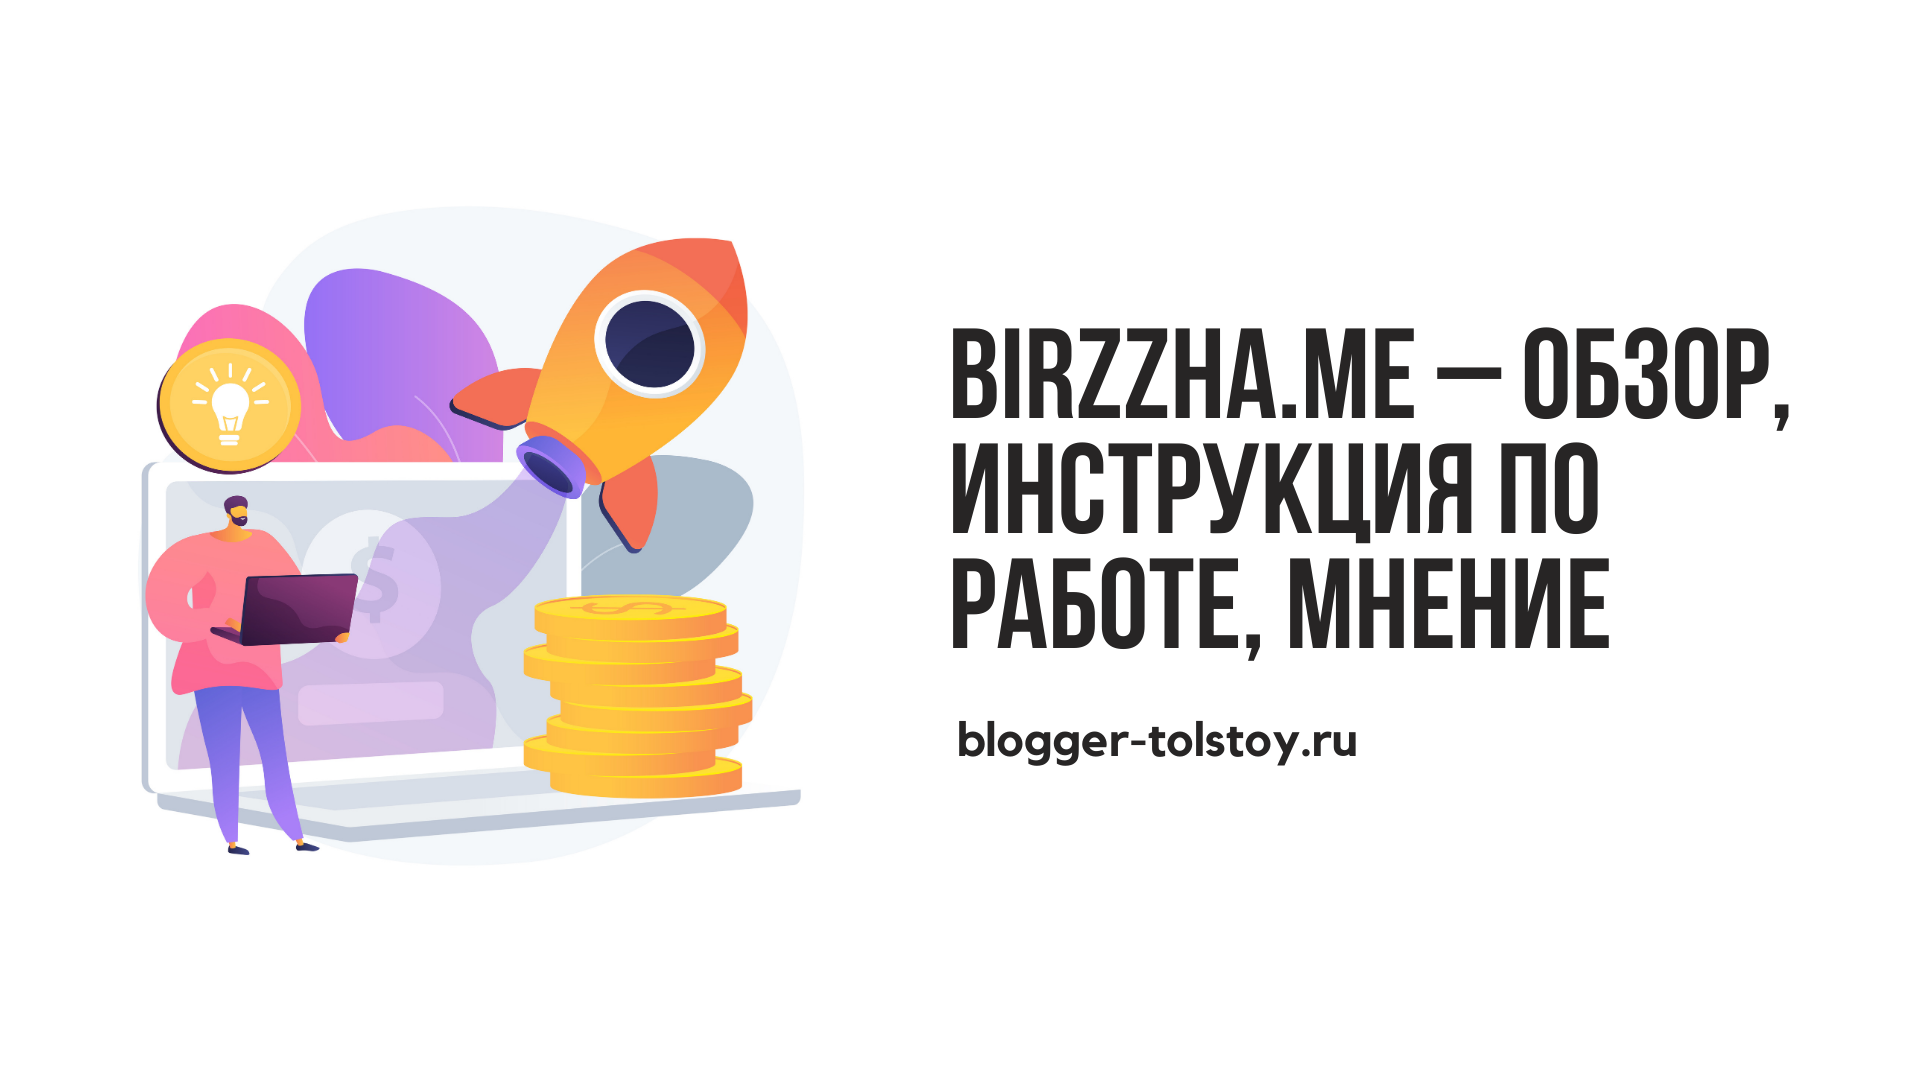 Birzzha.me – обзор, инструкция по работе, мнение